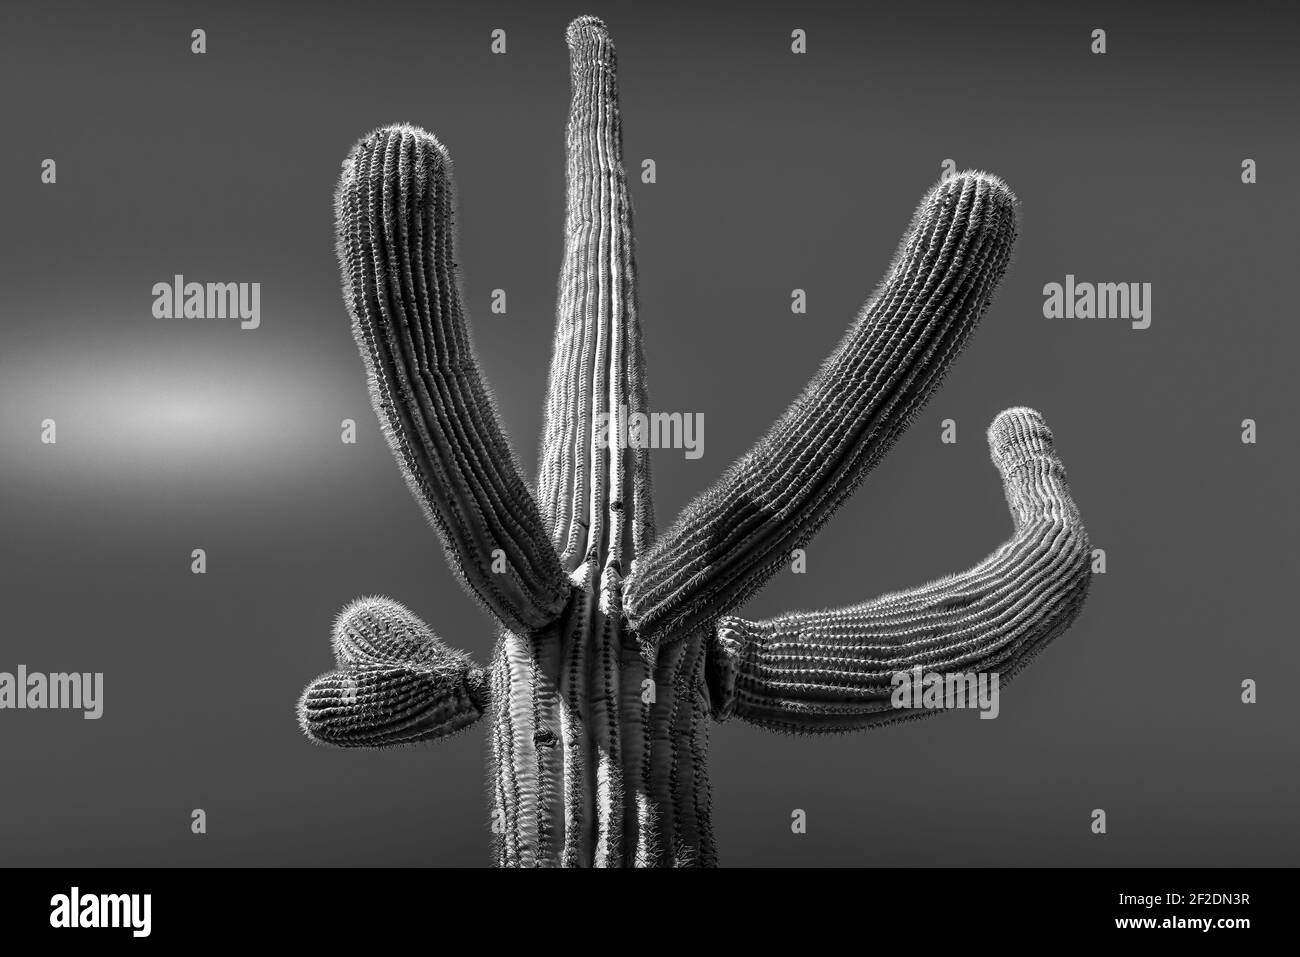 Cactus Saguaro isolé avec bras gestants vers le haut contre un ciel sans nuages dans le désert de Sonoran en Arizona, Etats-Unis, en noir et blanc Banque D'Images